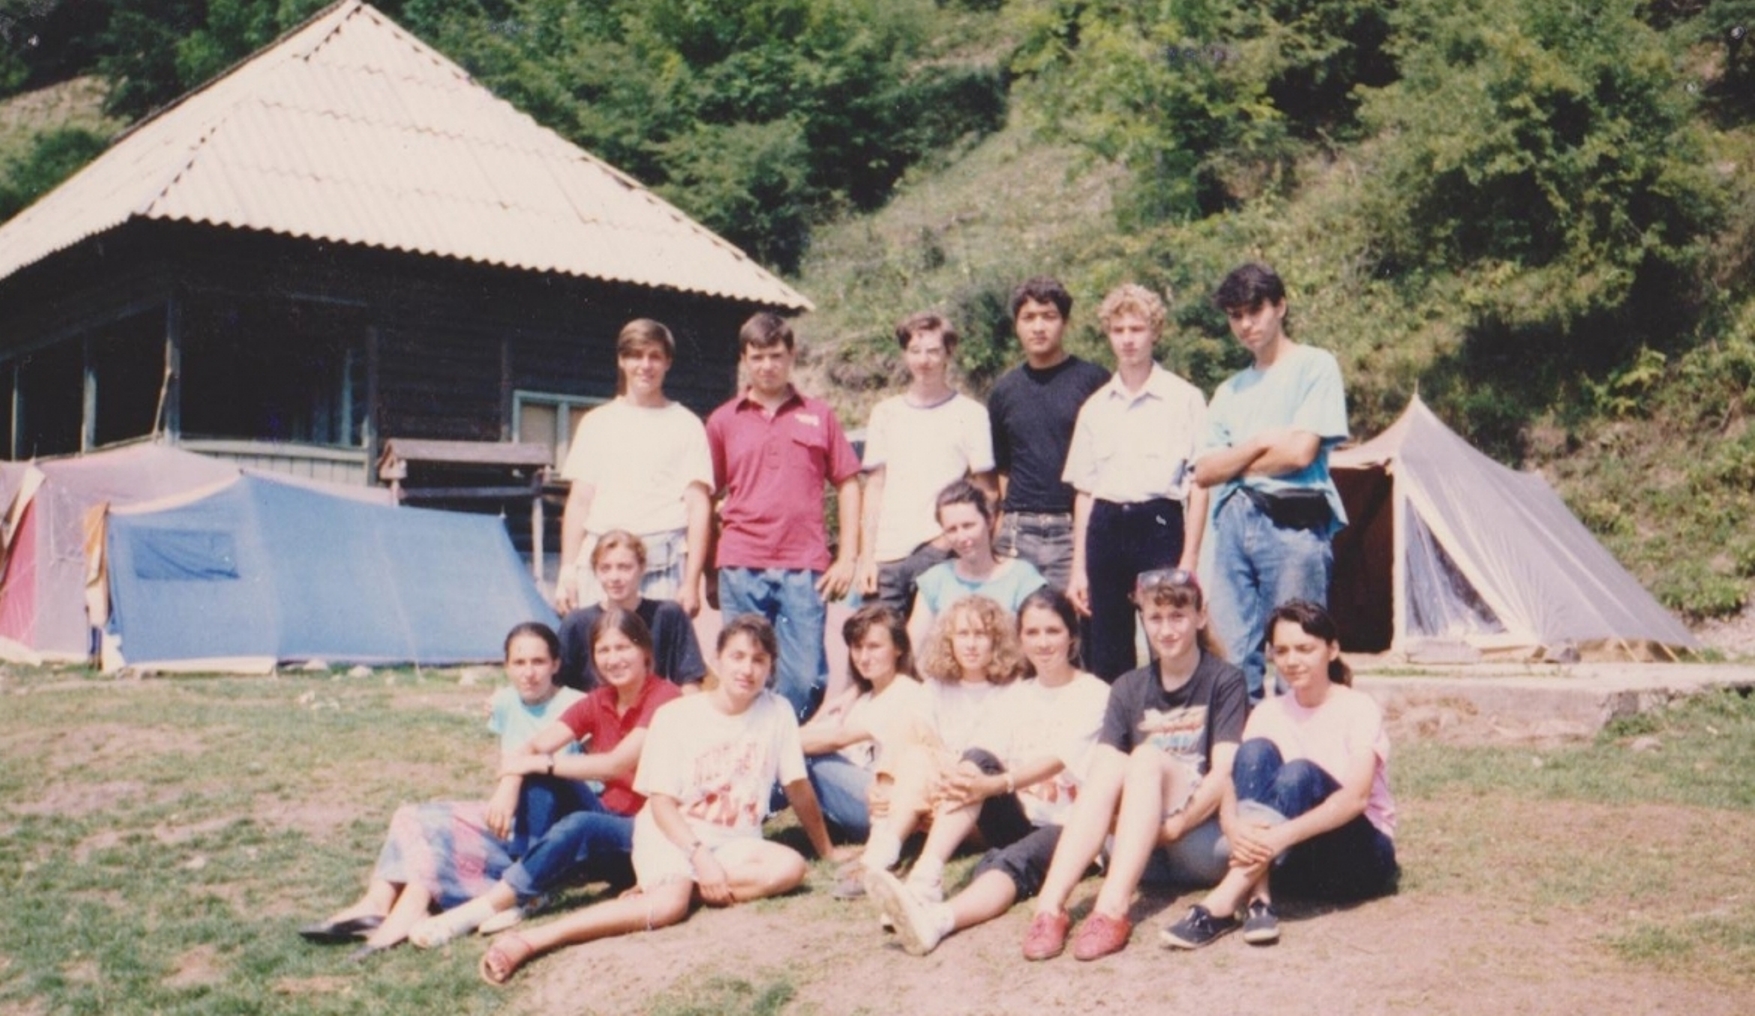 ADOLESCENTI DIN VECHEA BISERICA CRESTINA DUPA EVANGHELIE DRAGOS VODA IN EXCURSIE LA MALAIA IN 1993